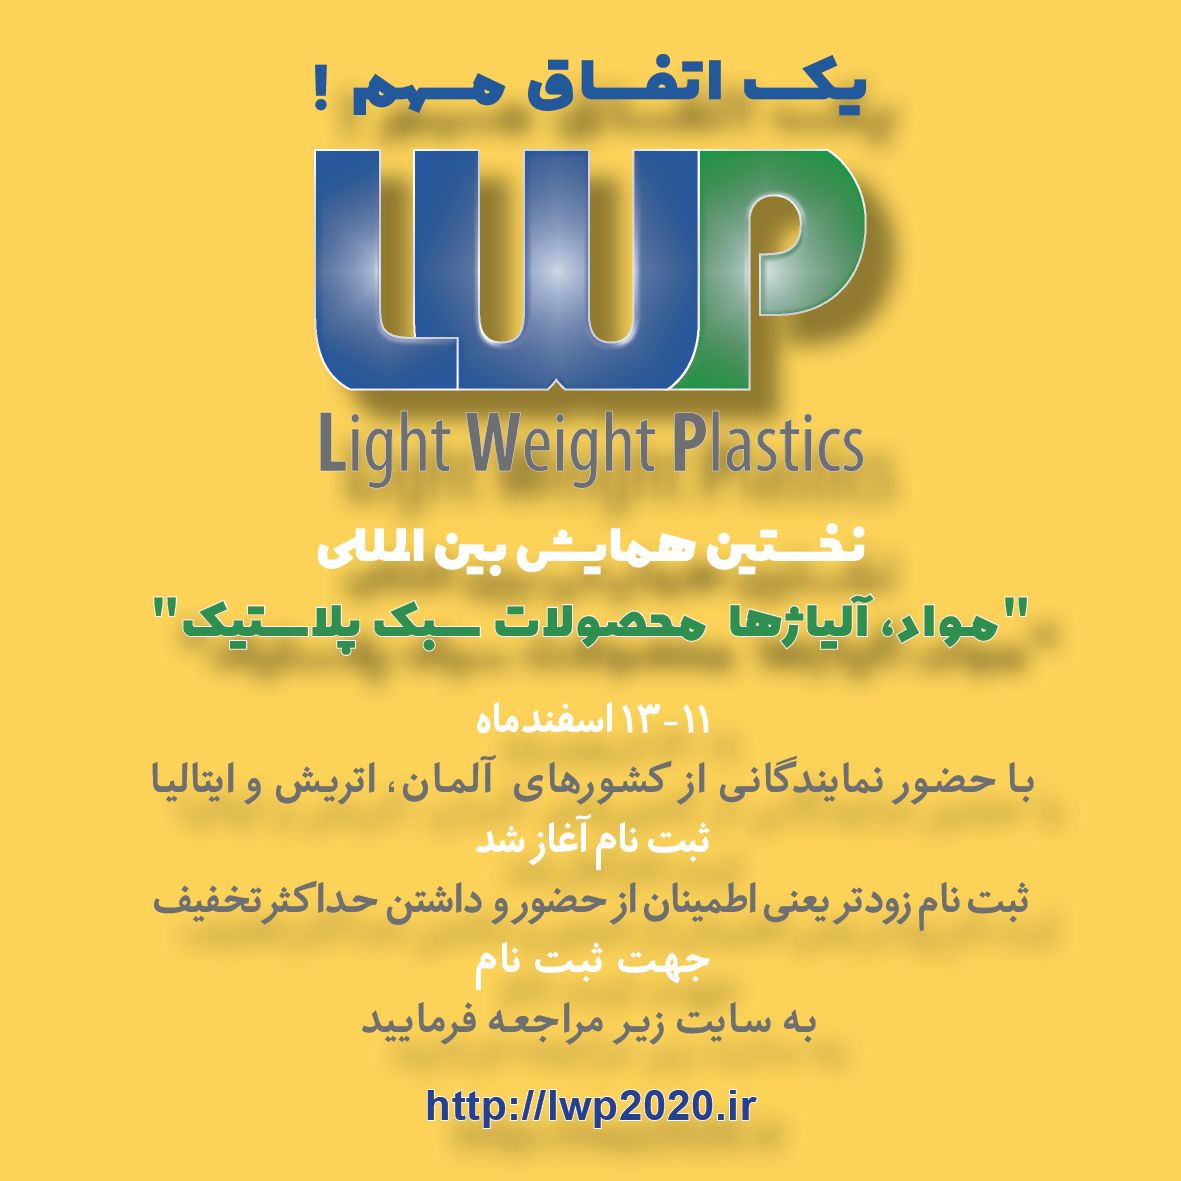 برگزاری نخستین همایش مواد، آلیاژها و محصولات سبک پلاستیک در ایران 